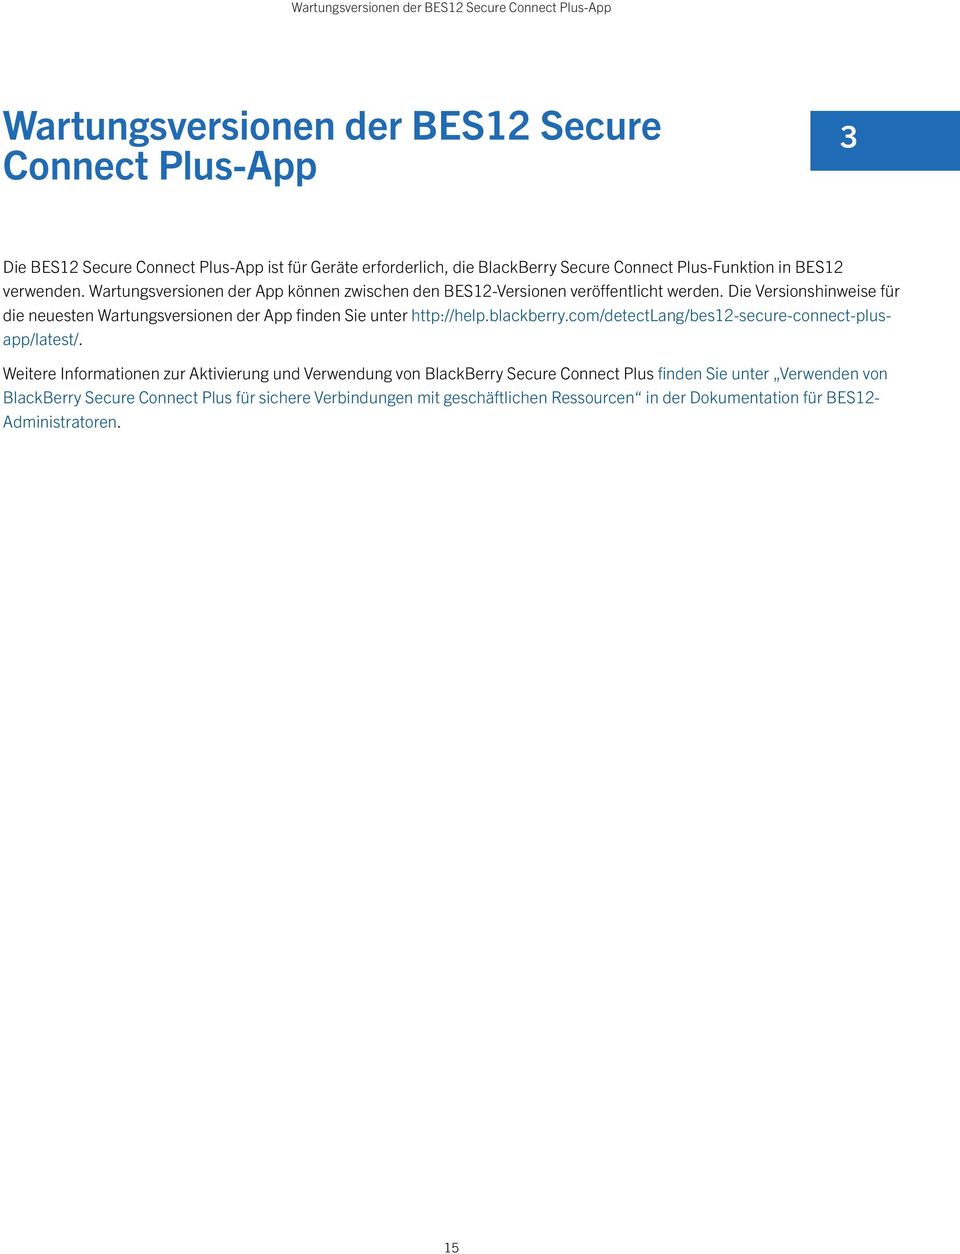 Die Versionshinweise für die neuesten Wartungsversionen der App finden Sie unter http://help.blackberry.com/detectlang/bes12-secure-connect-plusapp/latest/.